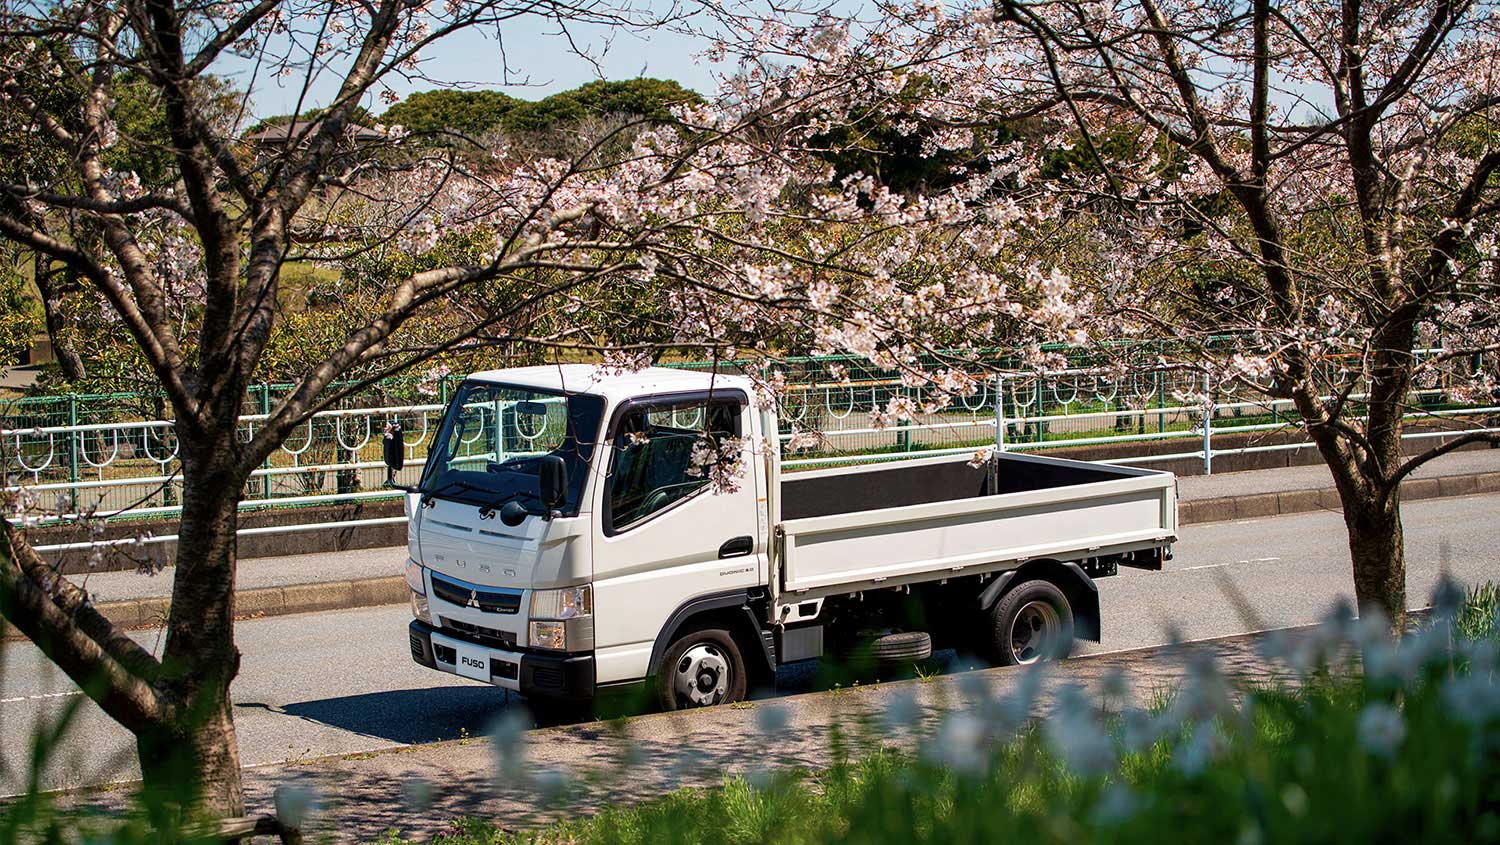 Camioneta Canter 513 Blanco, transitando por calles rodeados de árboles floridos